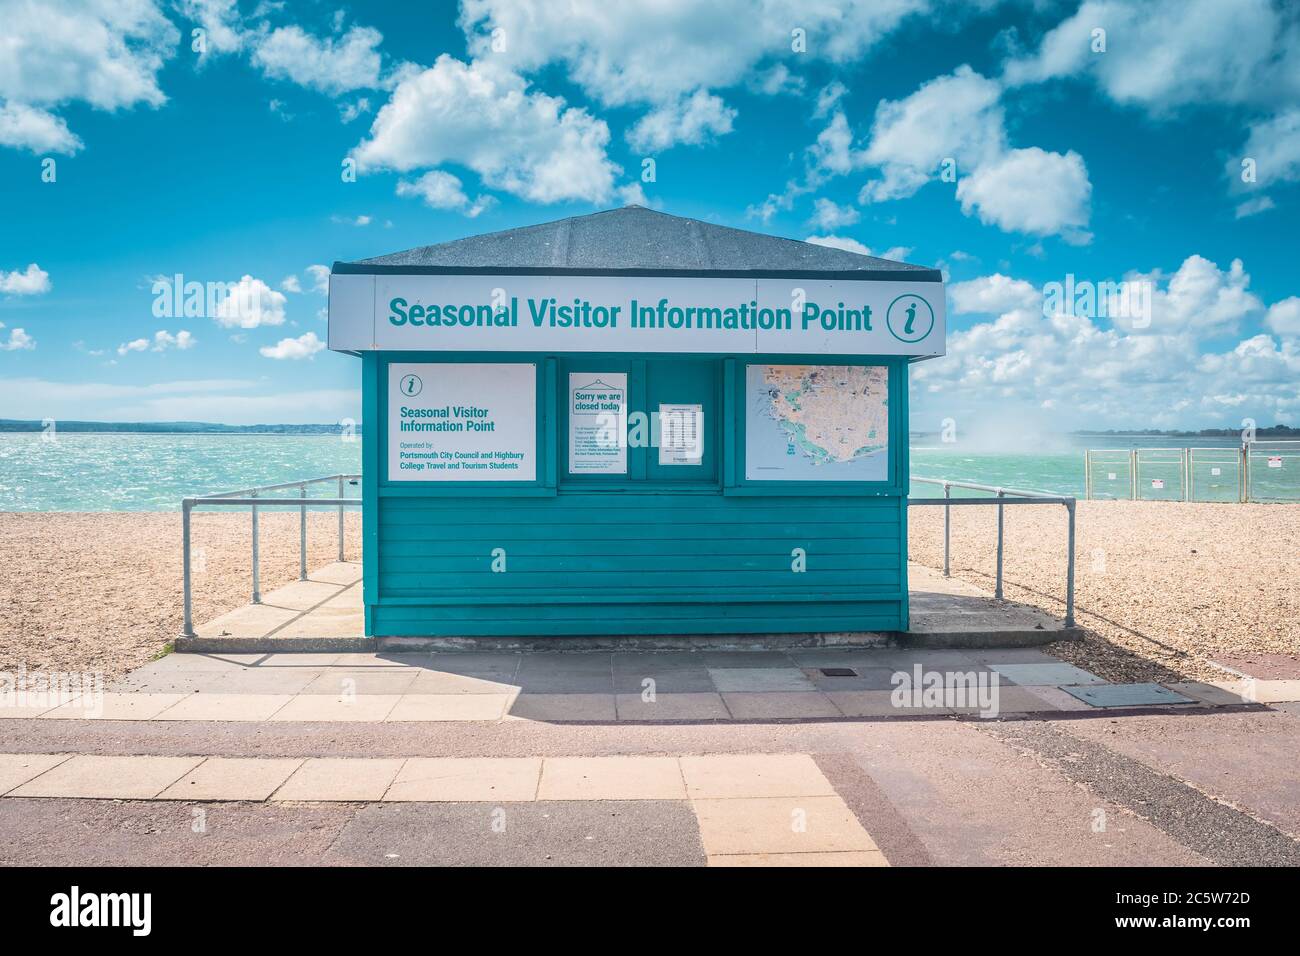 Point d'information saisonnier des visiteurs, Southsea, Hampshire, Angleterre, Royaume-Uni Banque D'Images